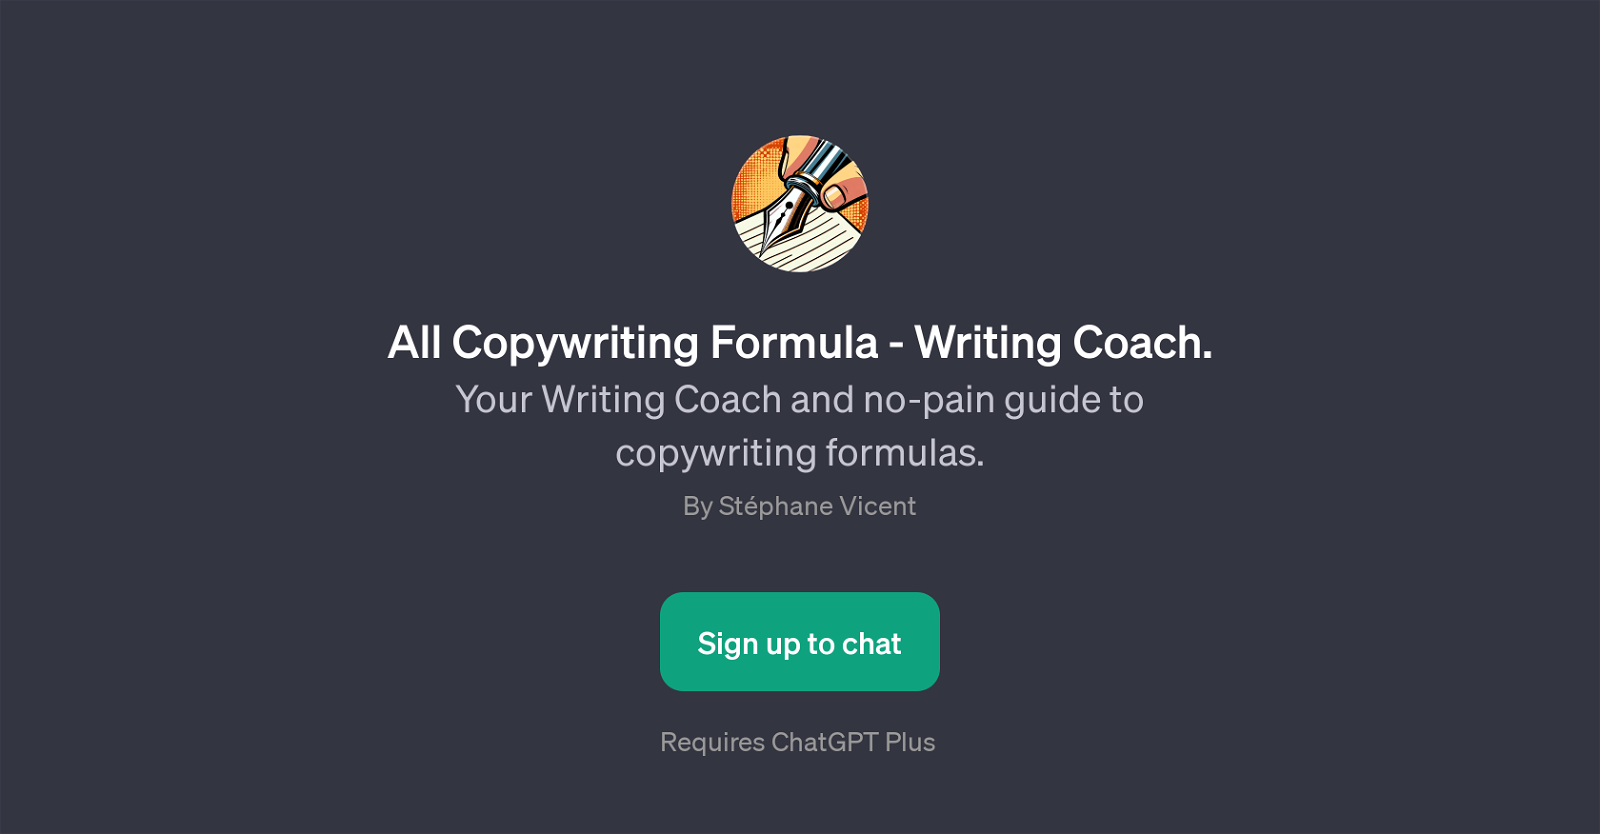 All Copywriting Formula - Writing Coach website